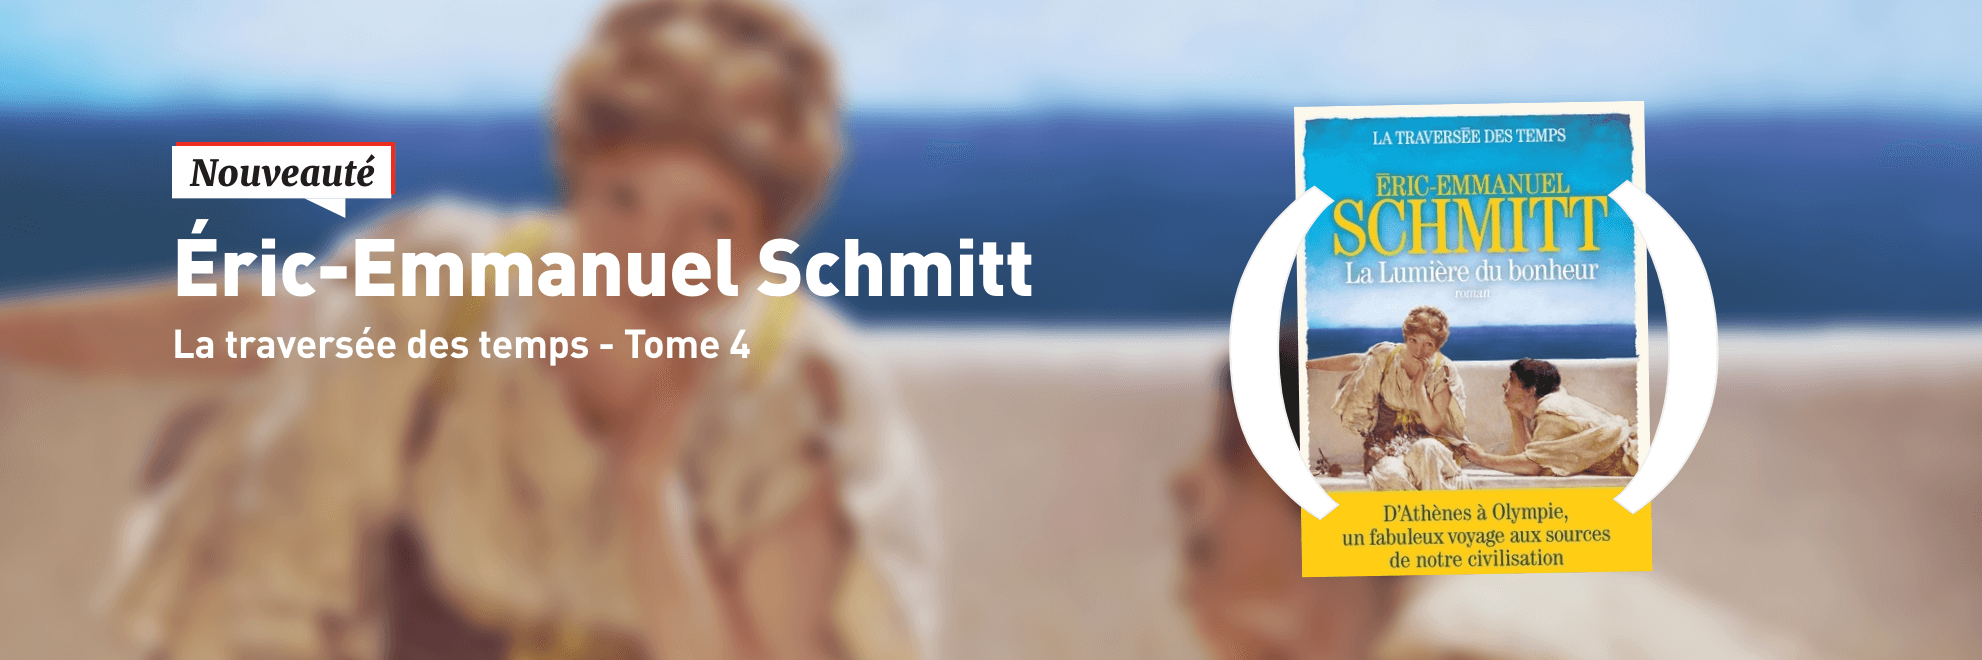 Nouveauté : La traversée des temps Tome 4 de Eric-Emmanuel Schmitt